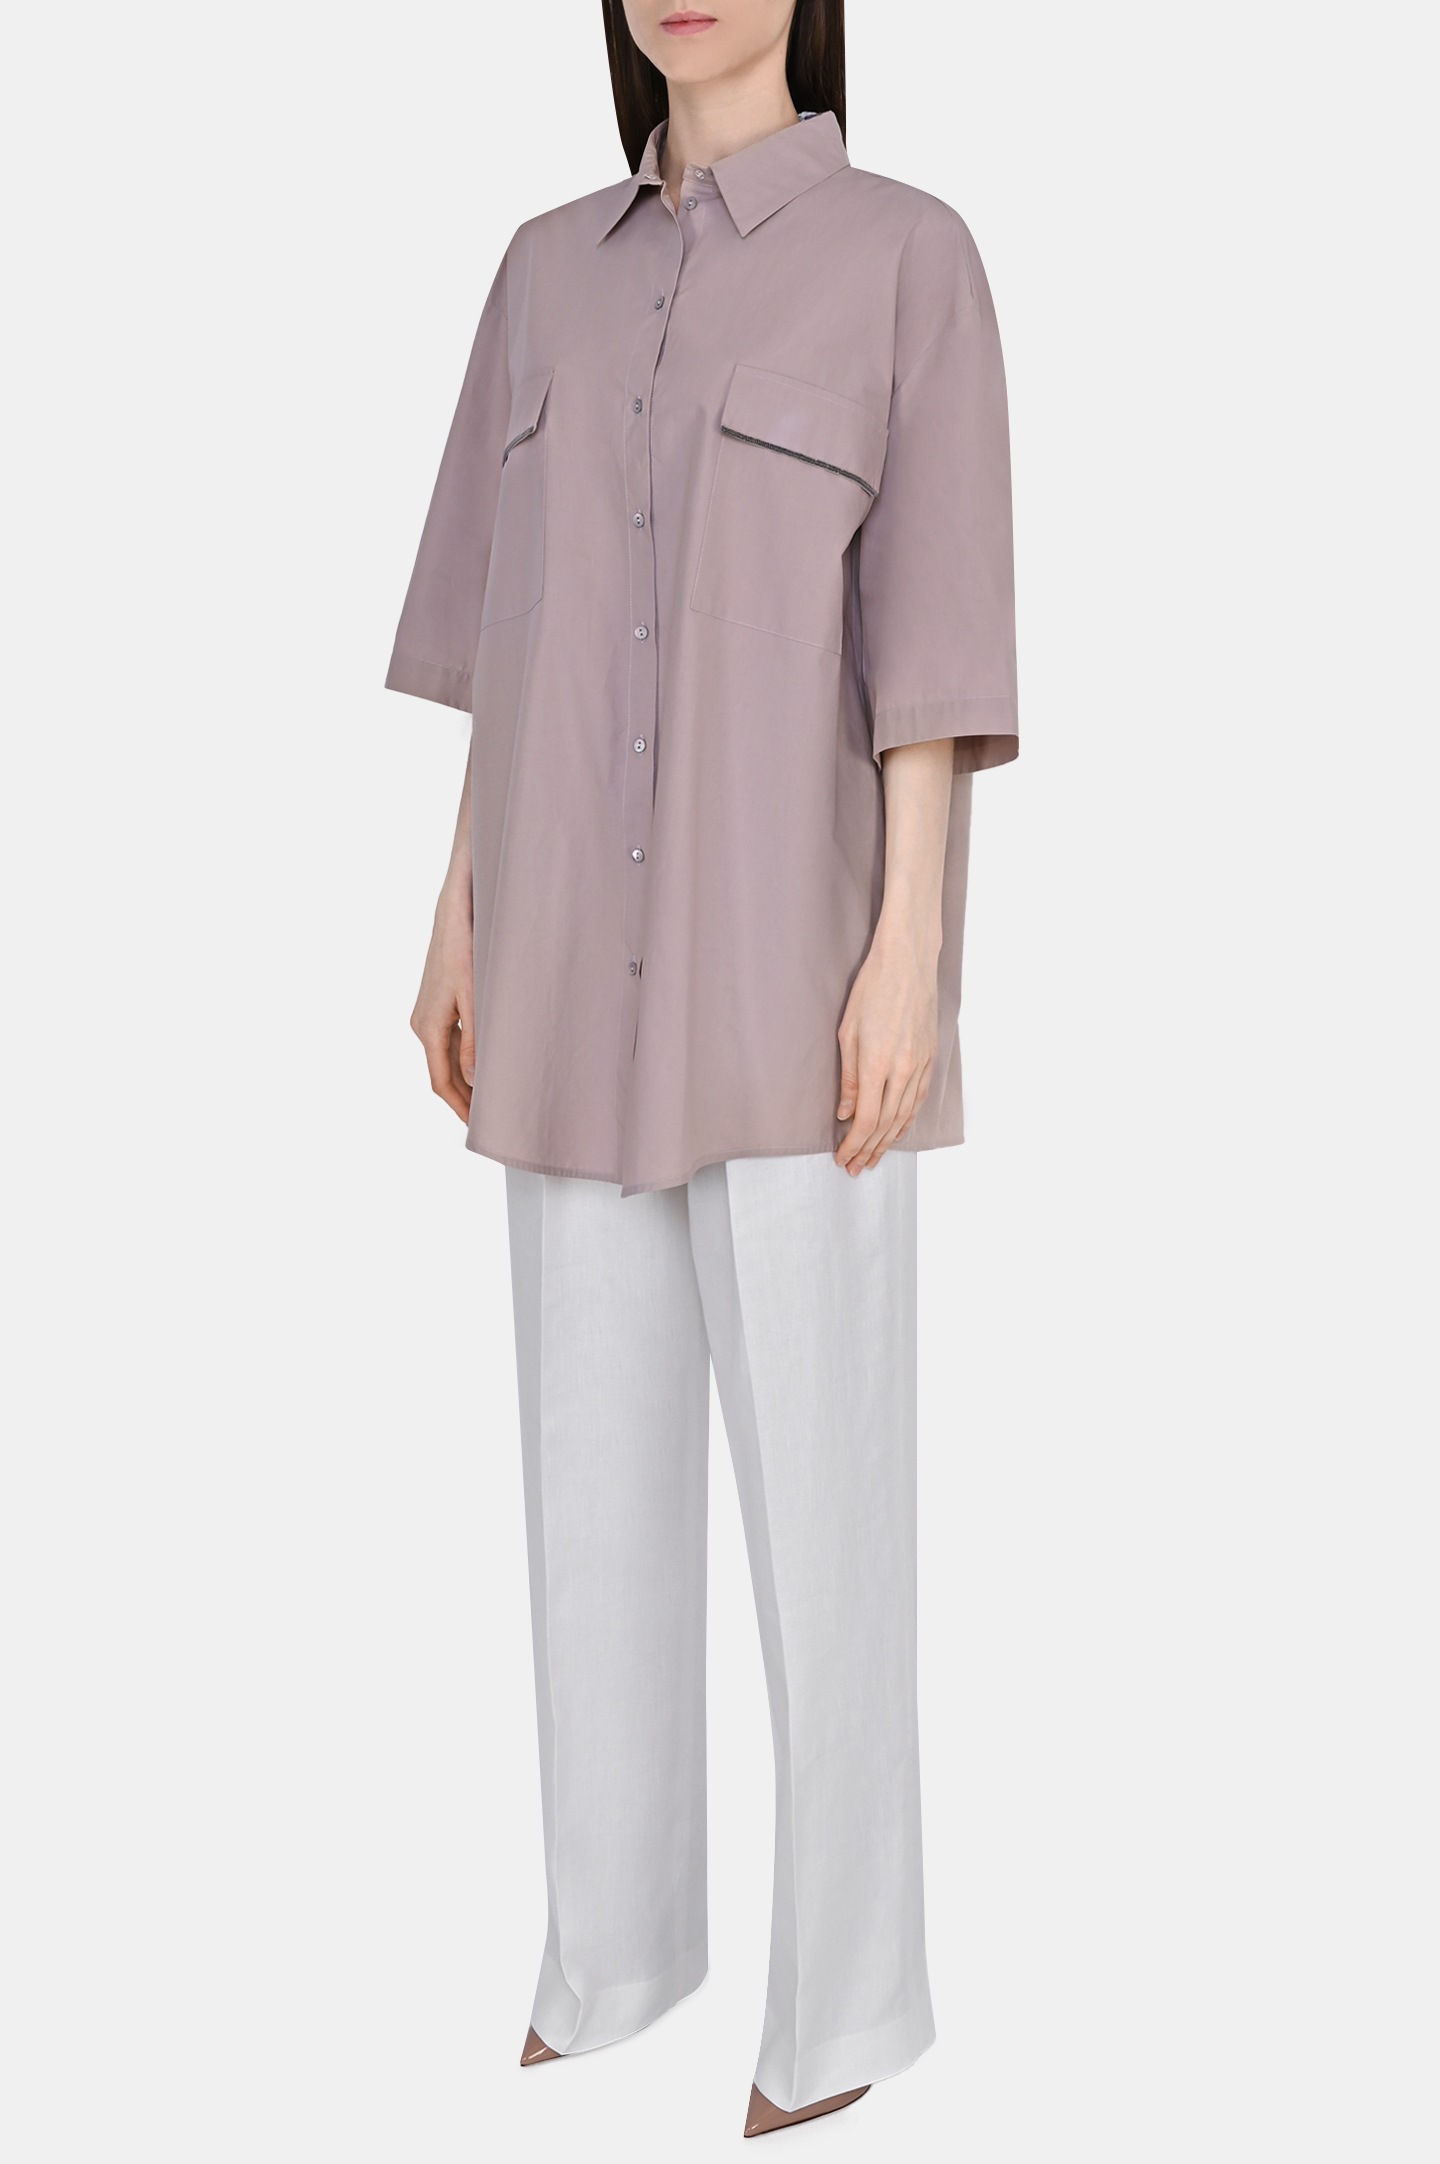 Рубашка FABIANA FILIPPI CAD273W359D252, цвет: Персиковый, Женский